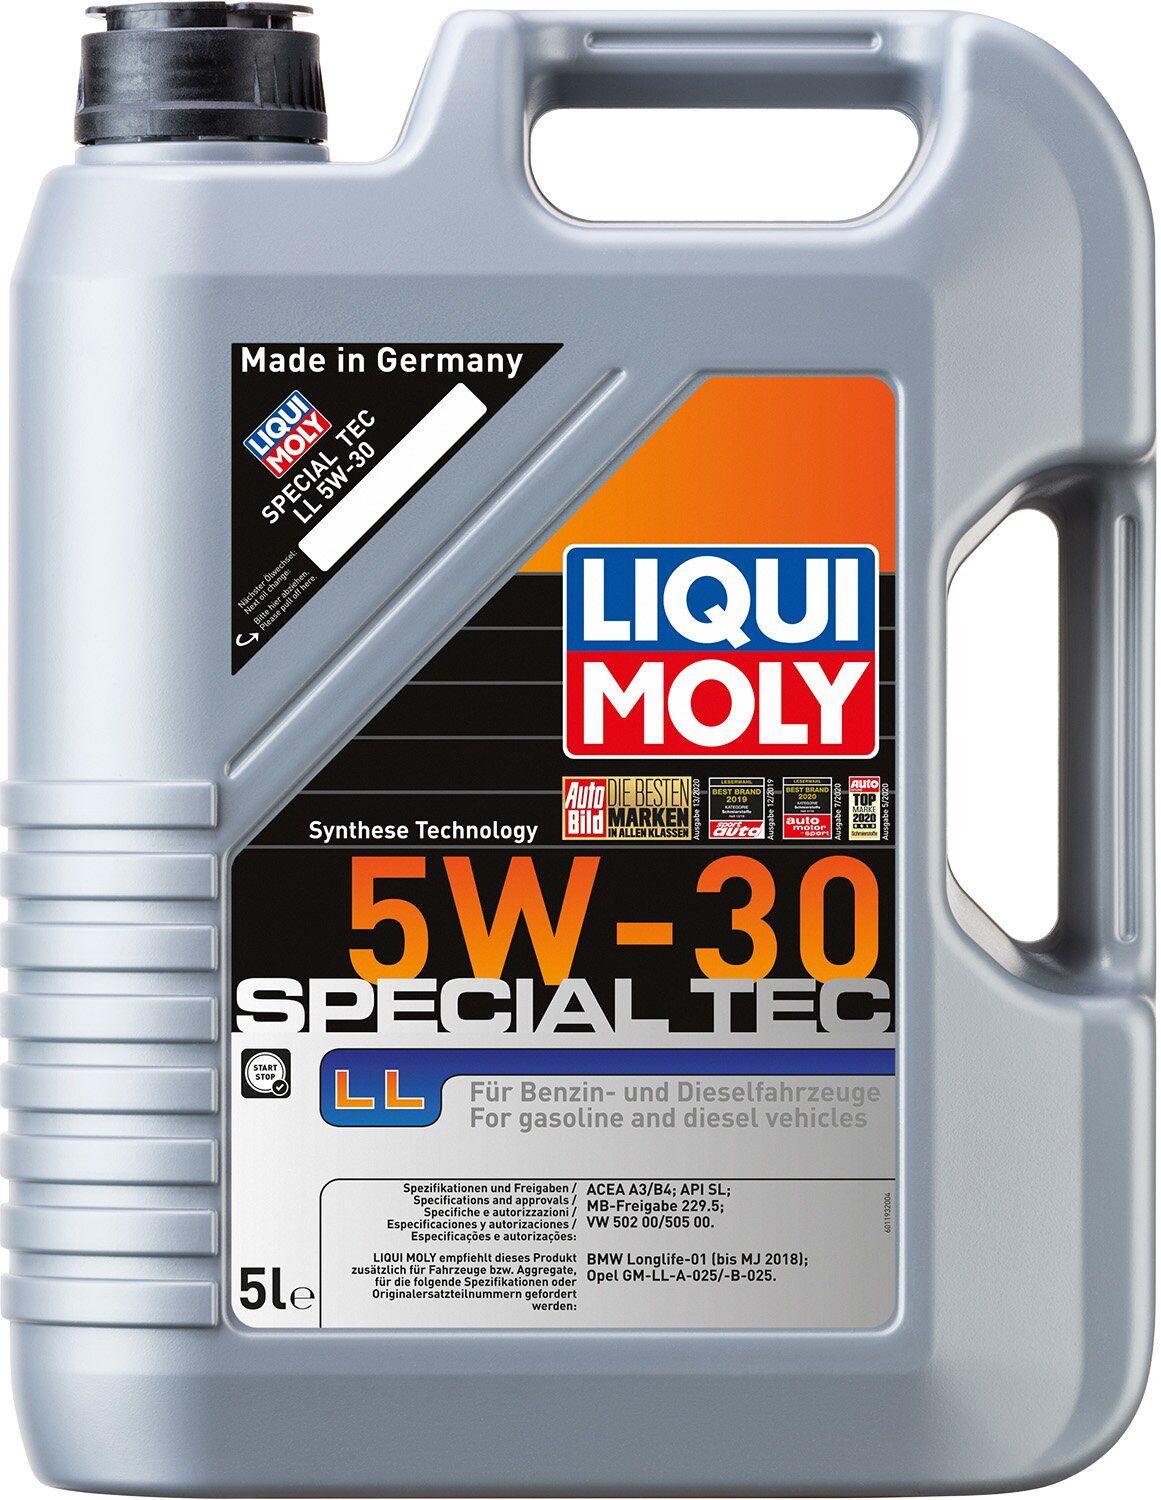 Моторное масло Liqui Moly Special Tec LL / OPEL 5W-30, 5 литров (8055)